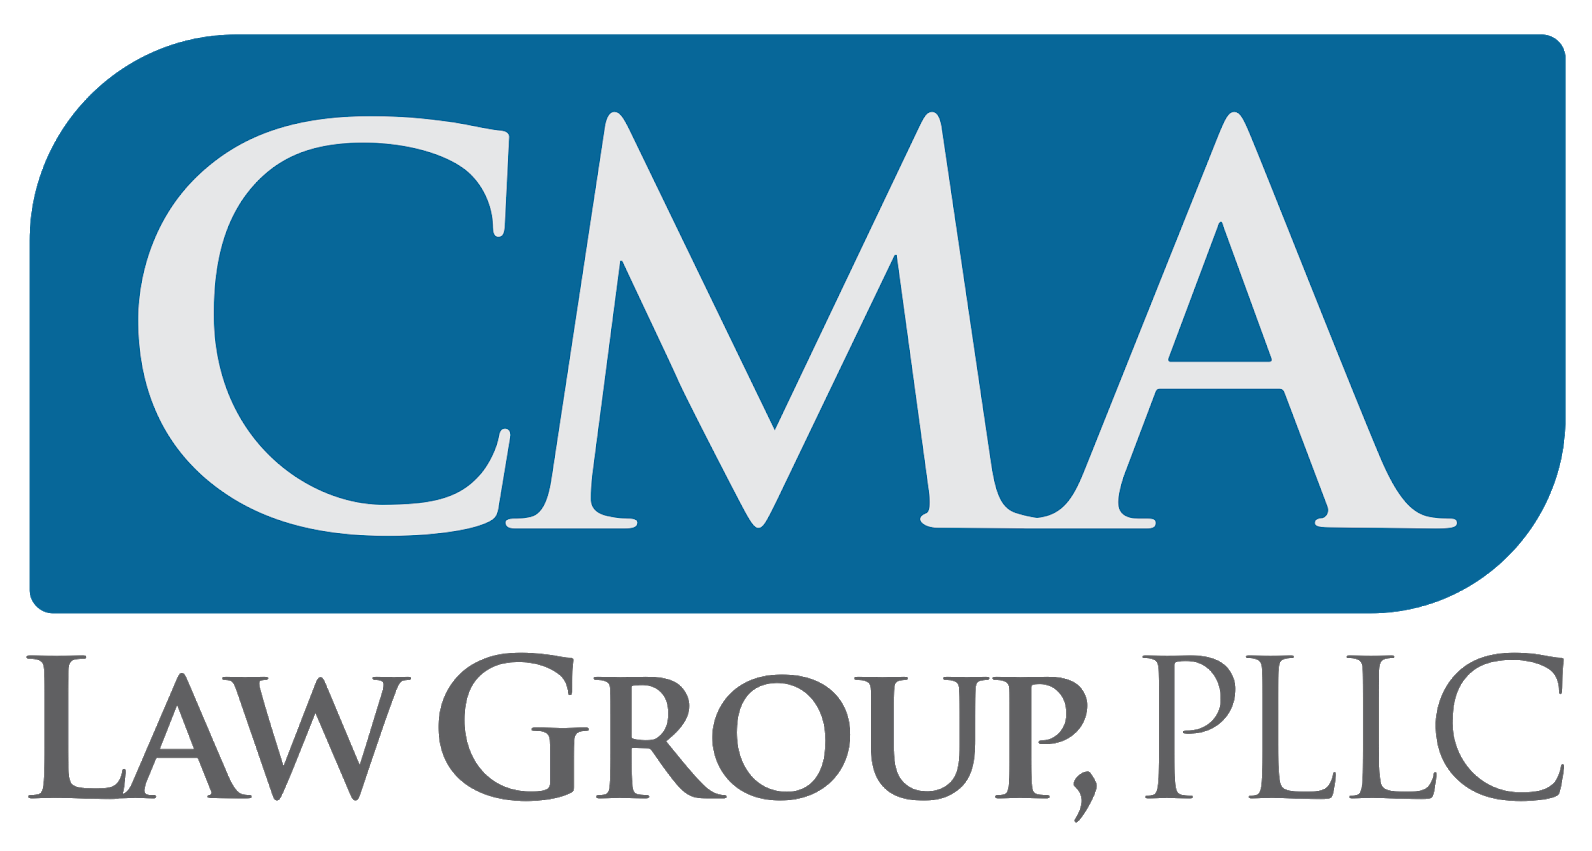 CMA letter mark logo